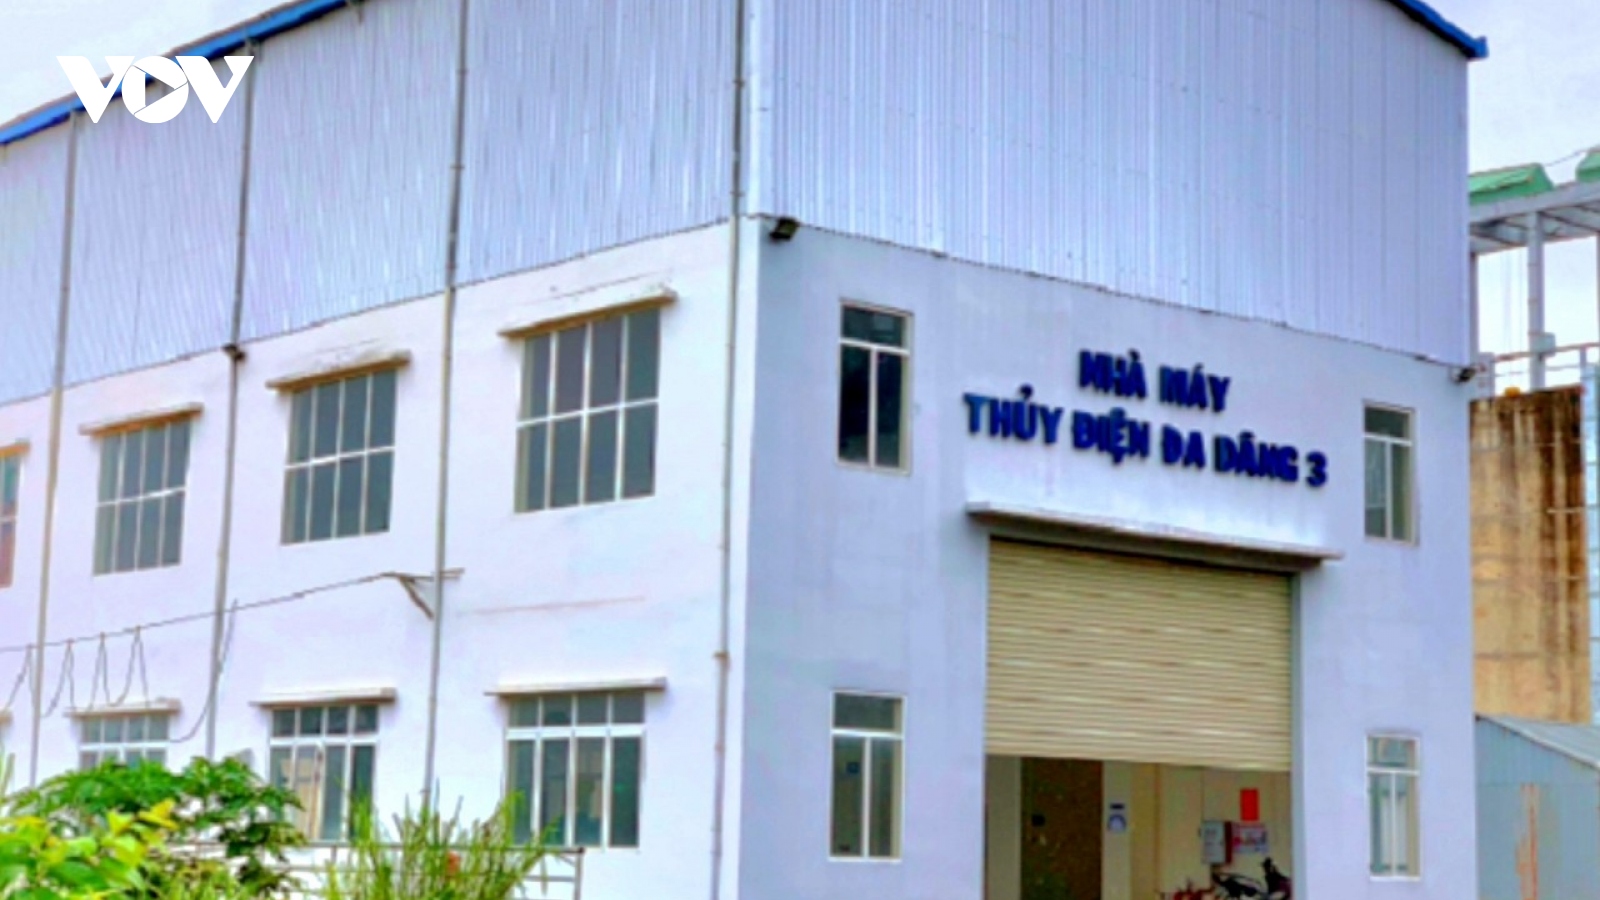 Lâm Đồng xử phạt 4 công ty thủy điện chưa nghiệm thu đã hoạt động